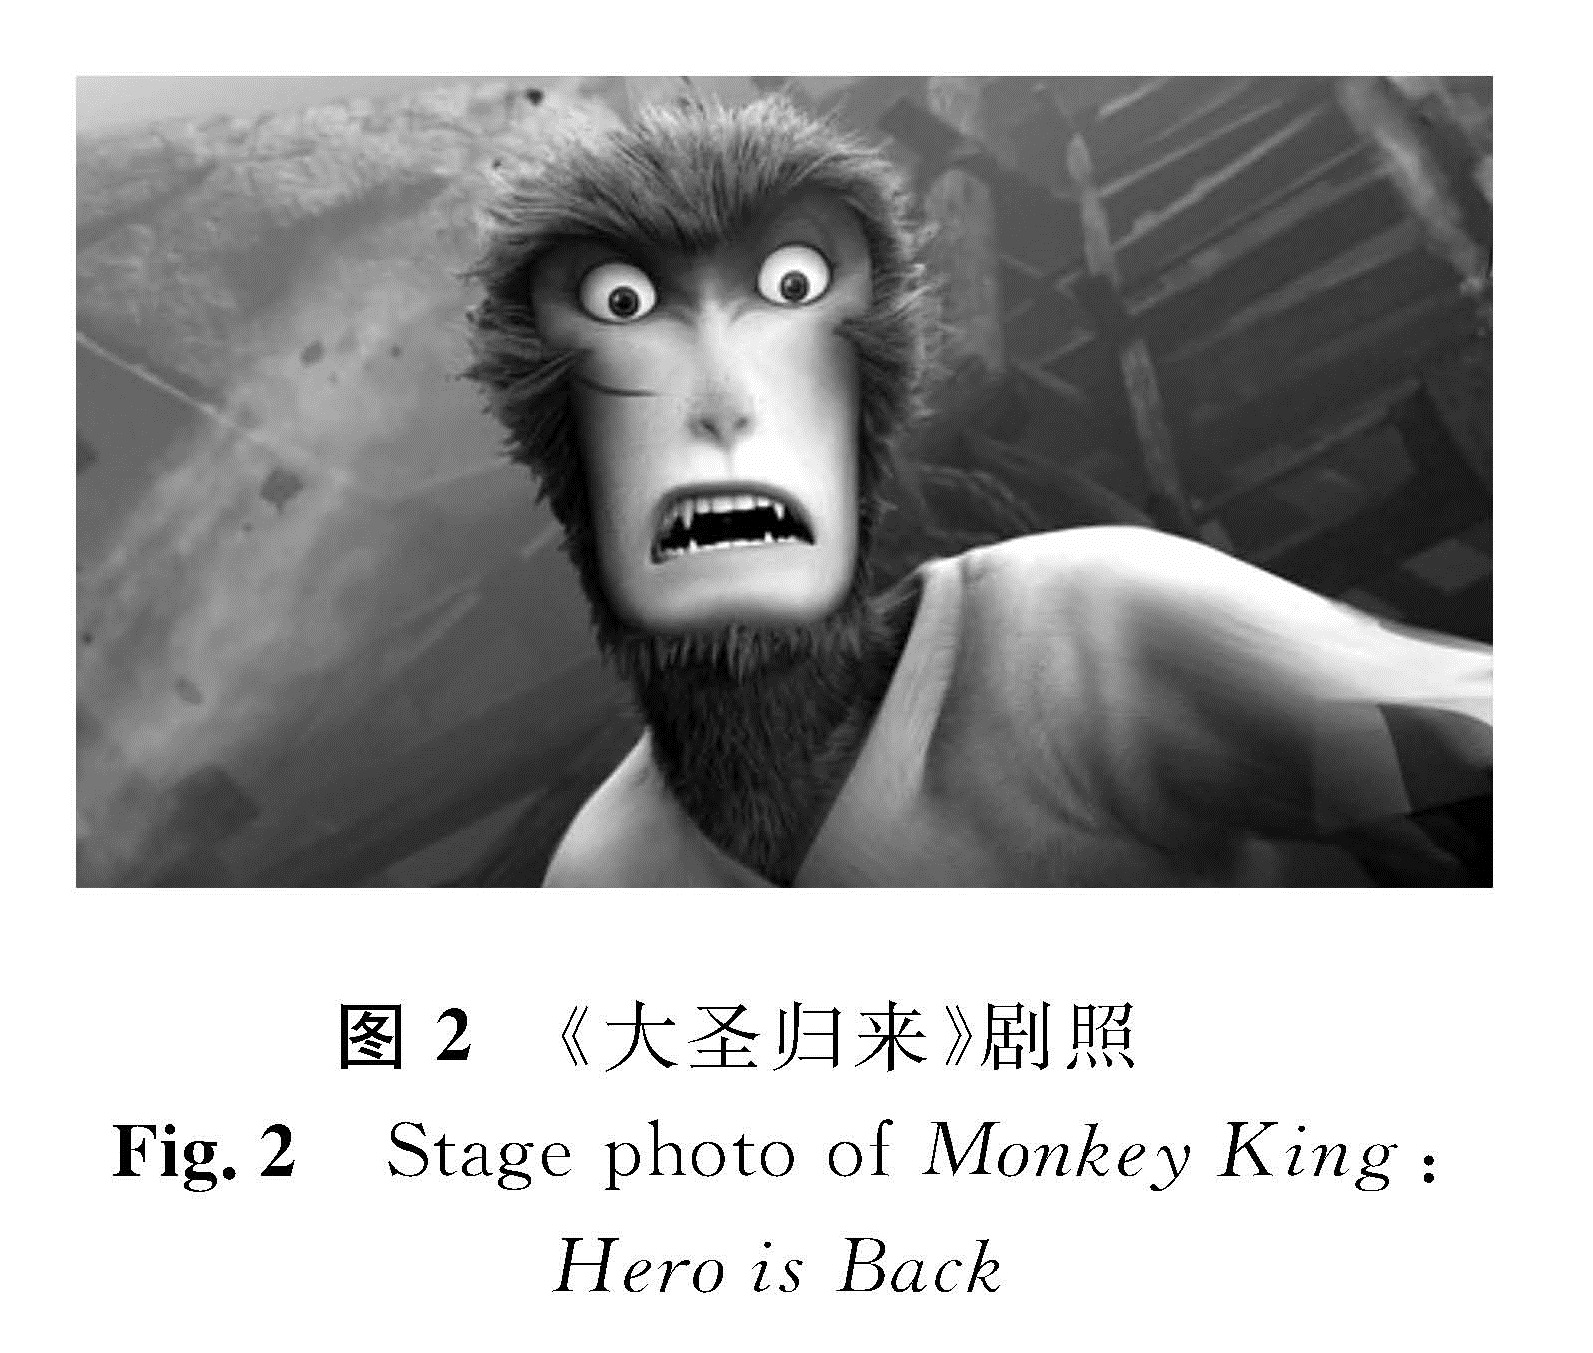 图2 《大圣归来》剧照<br/>Fig.2 Stage photo of Monkey King: Hero is Back